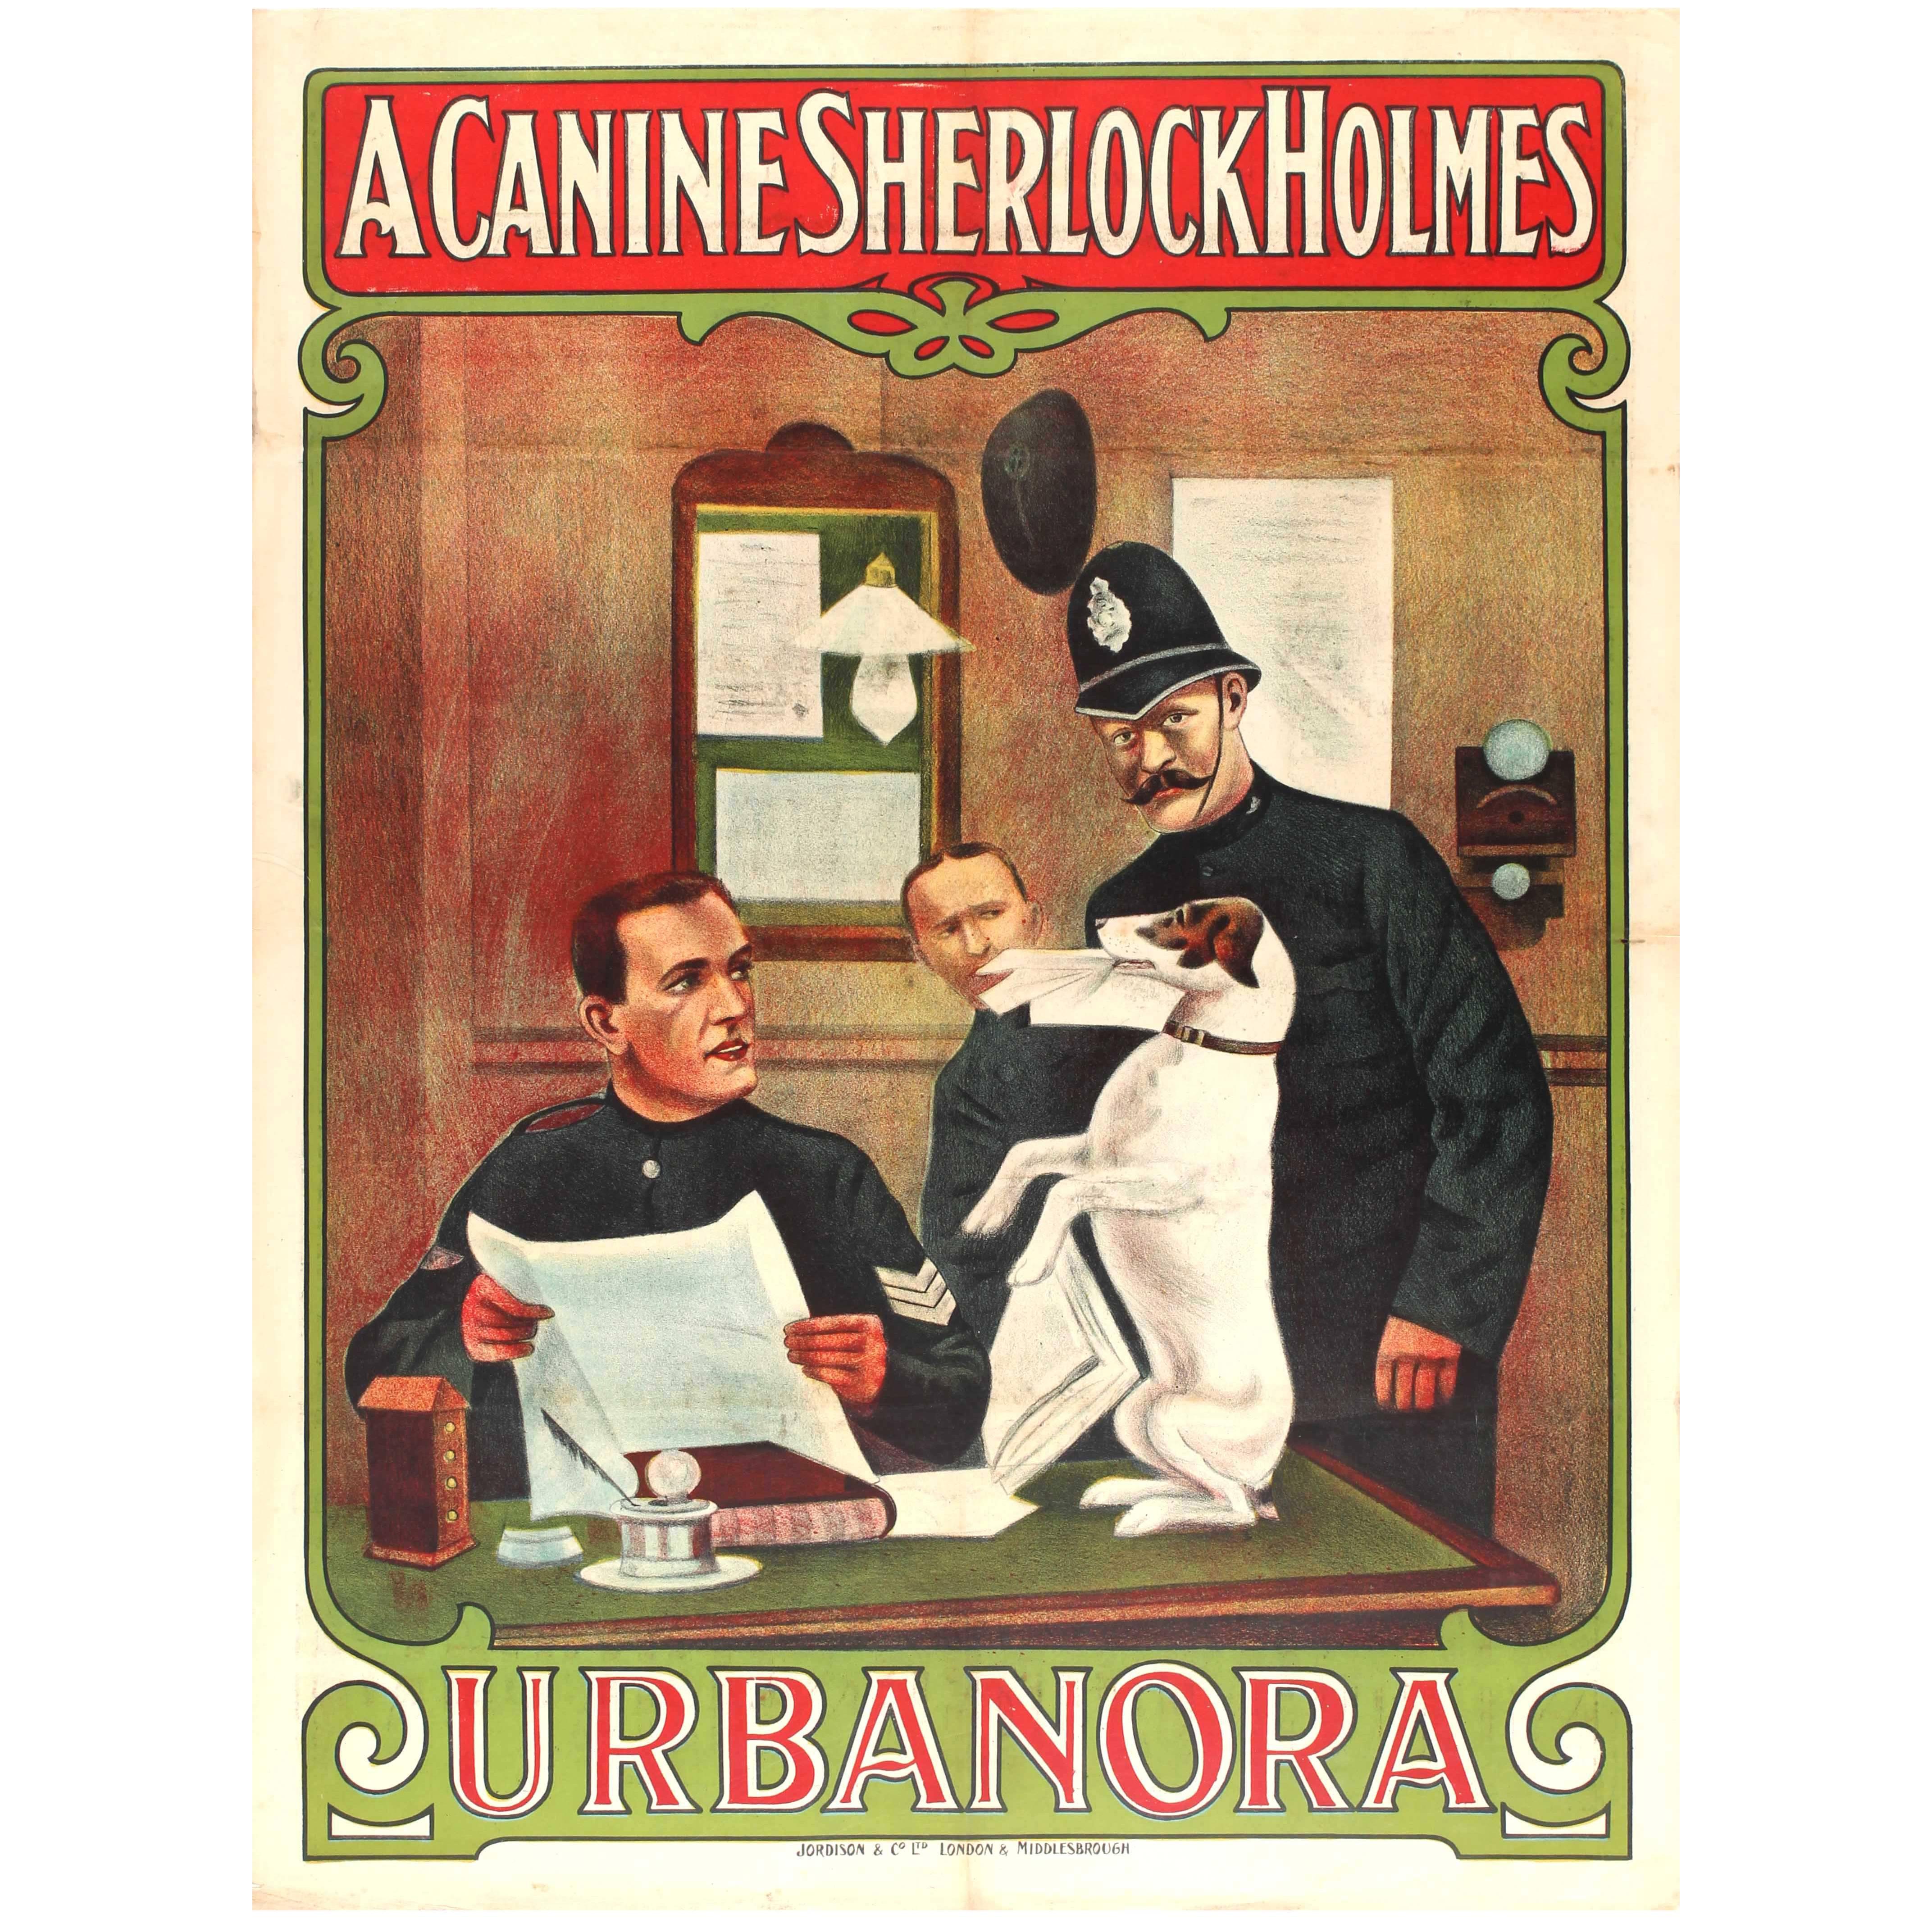 Rare Original Film Poster - A Canine Sherlock Holmes Urbanora The Dog Detective